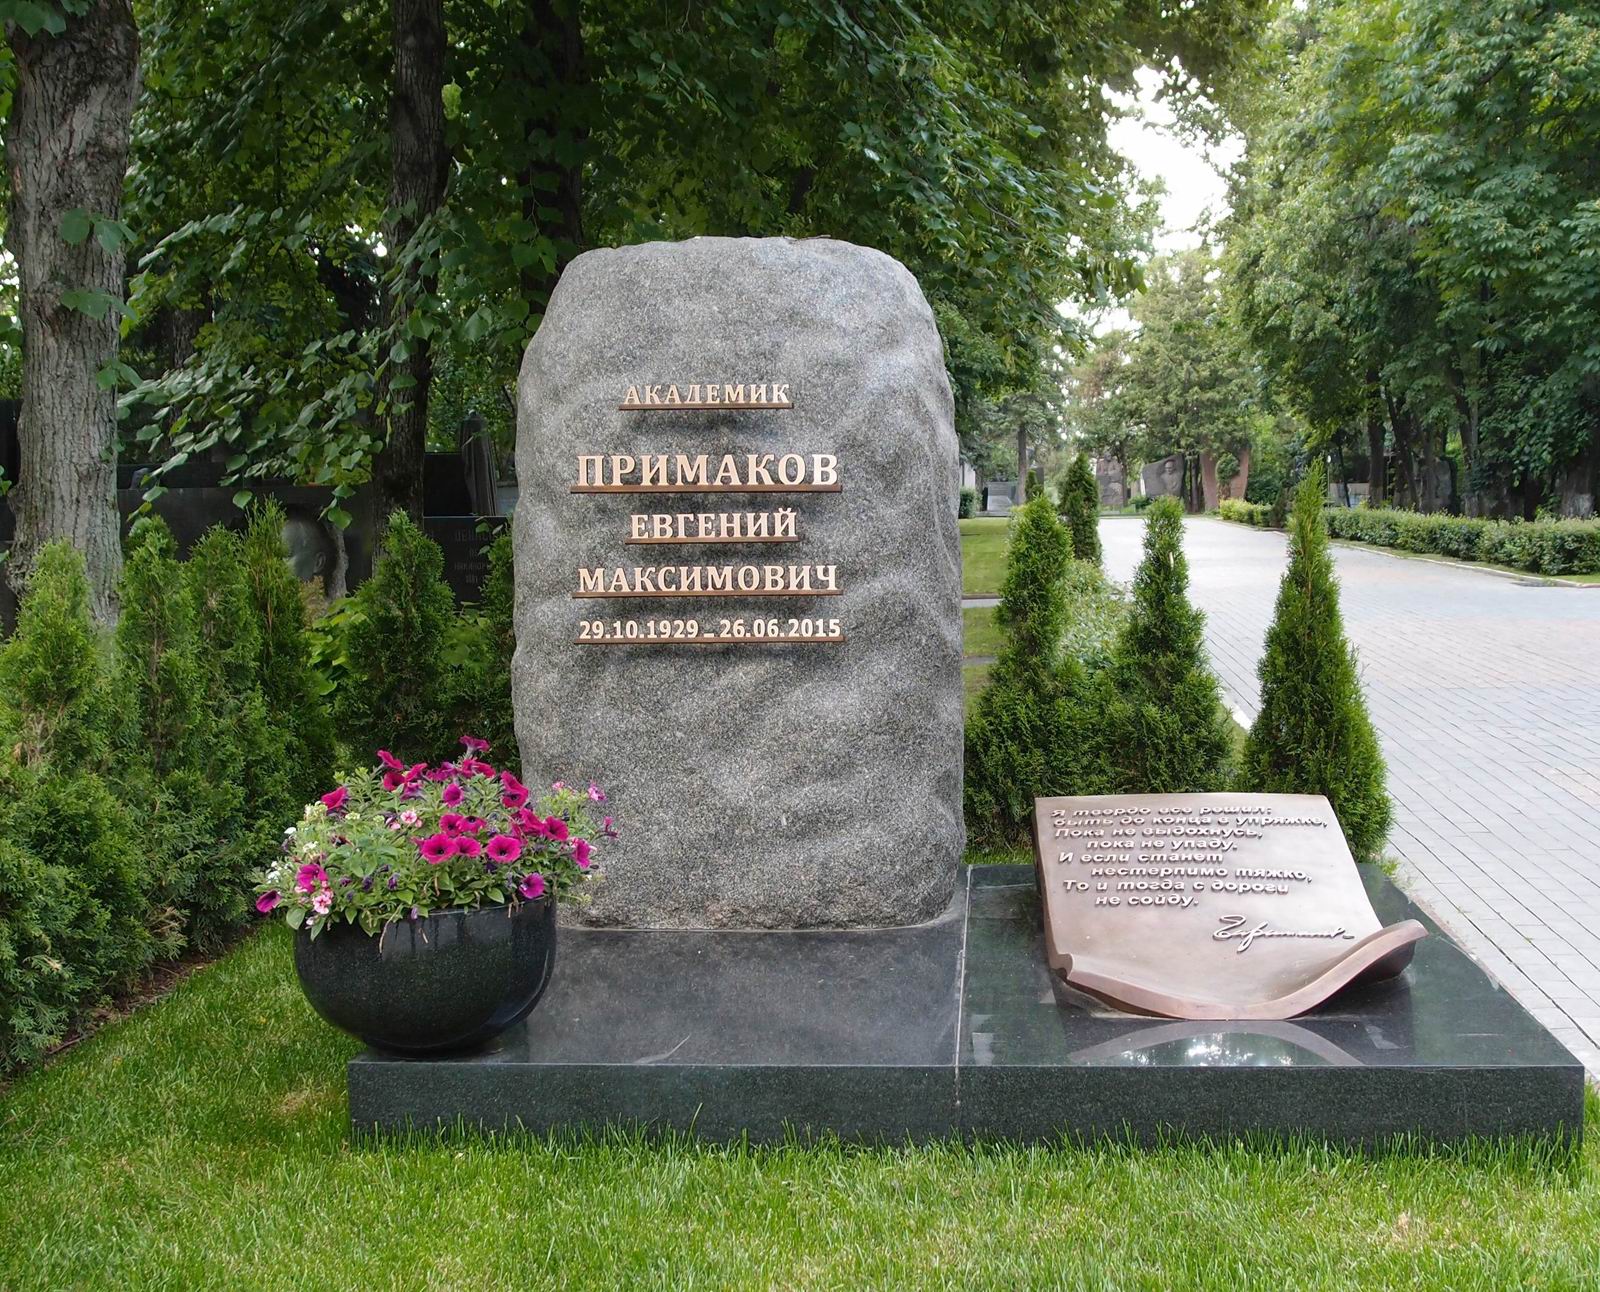 Памятник на могиле Примакова Е.М. (1929–2015), ск. М.Сагоян, арх. Ю.Туровцев, на Новодевичьем кладбище (6–23–1). Нажмите левую кнопку мыши чтобы увидеть фрагмент памятника.